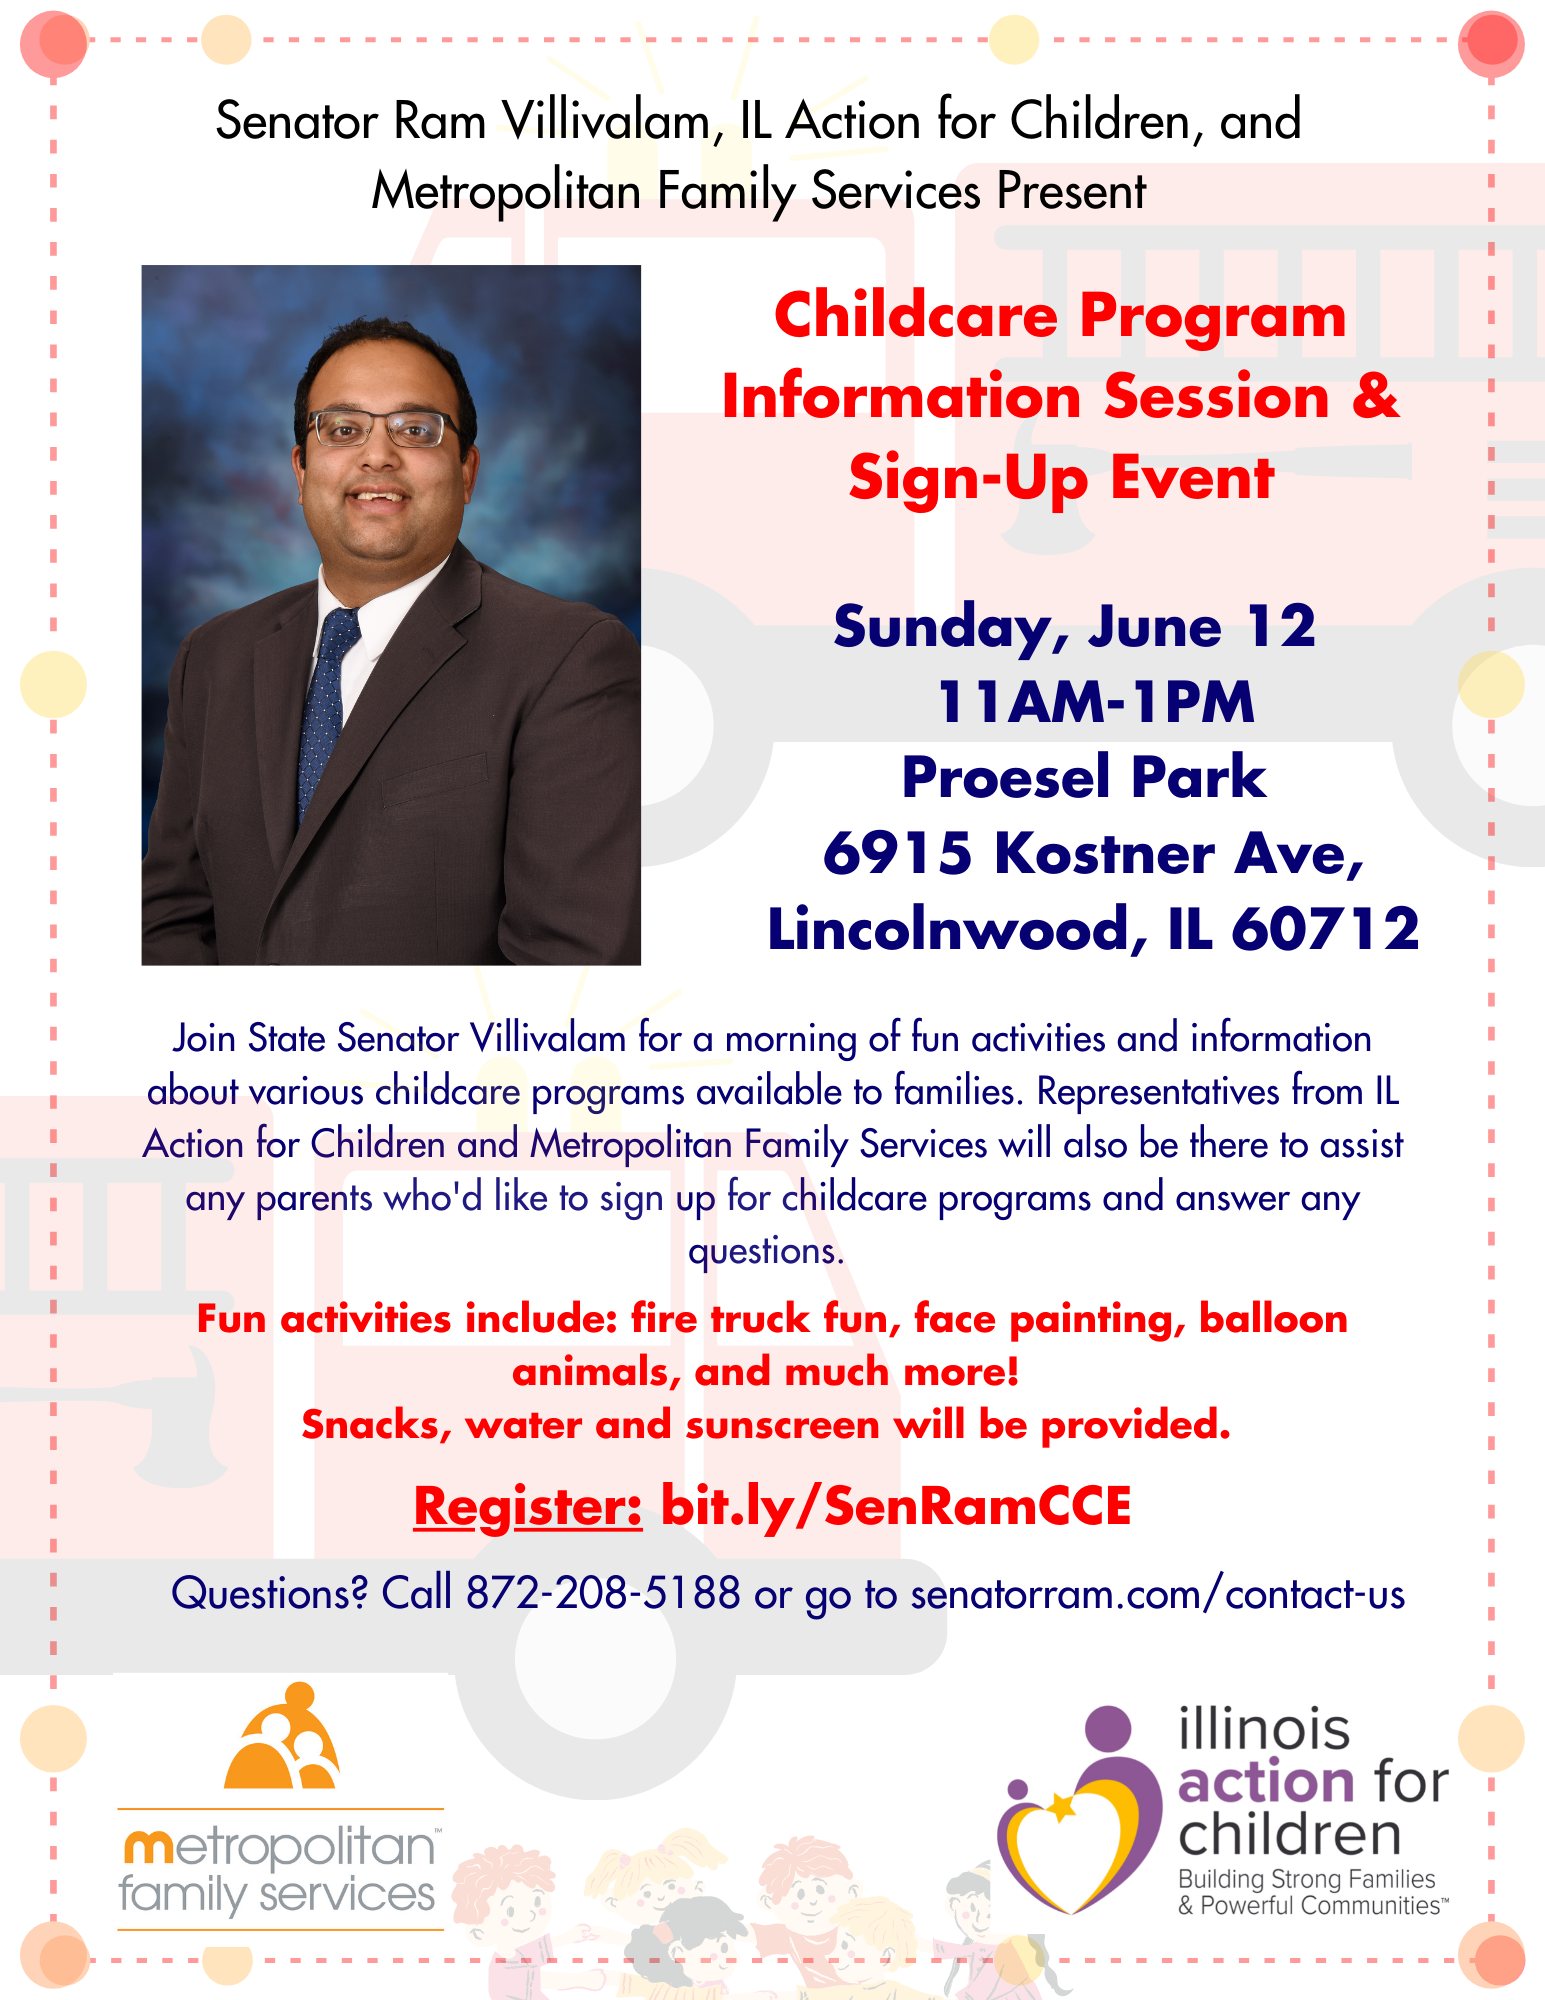 Child care event